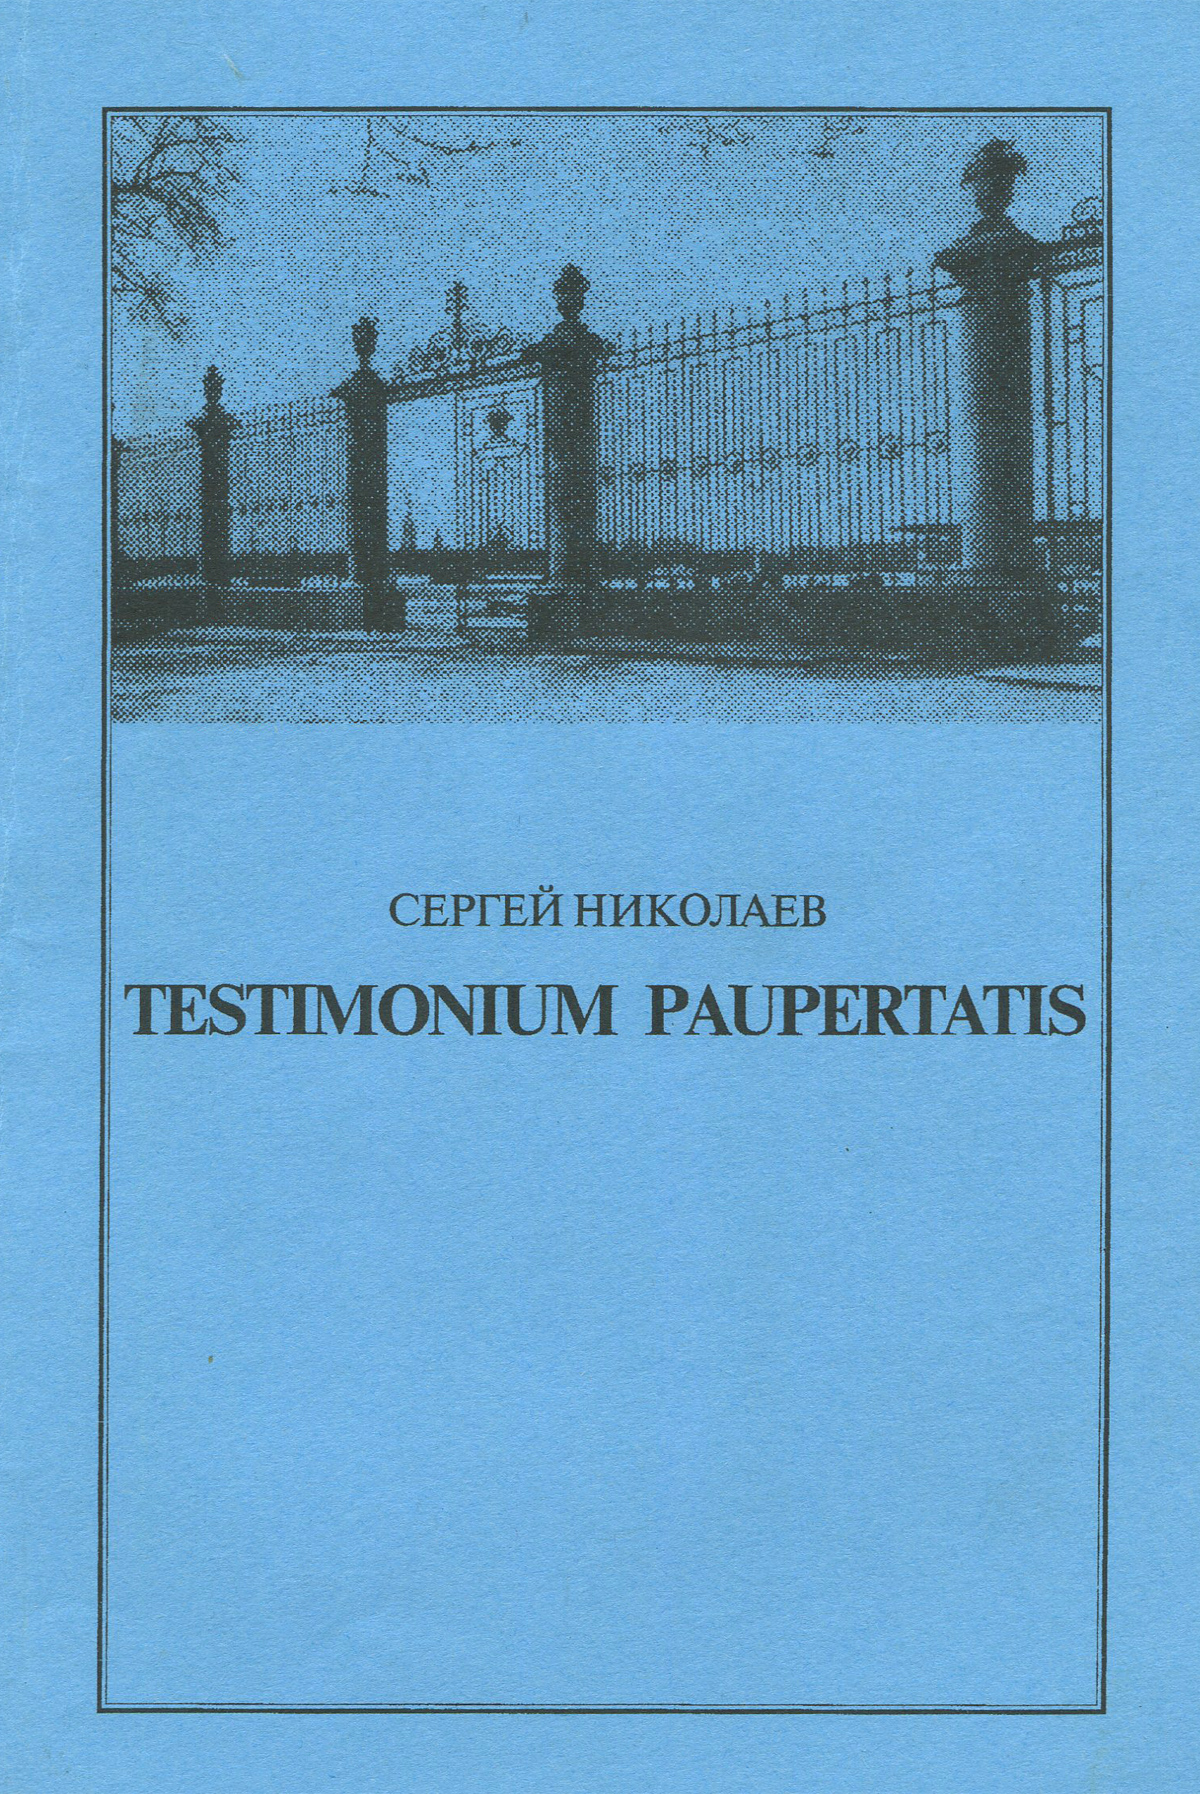 Testimonium paupertatis